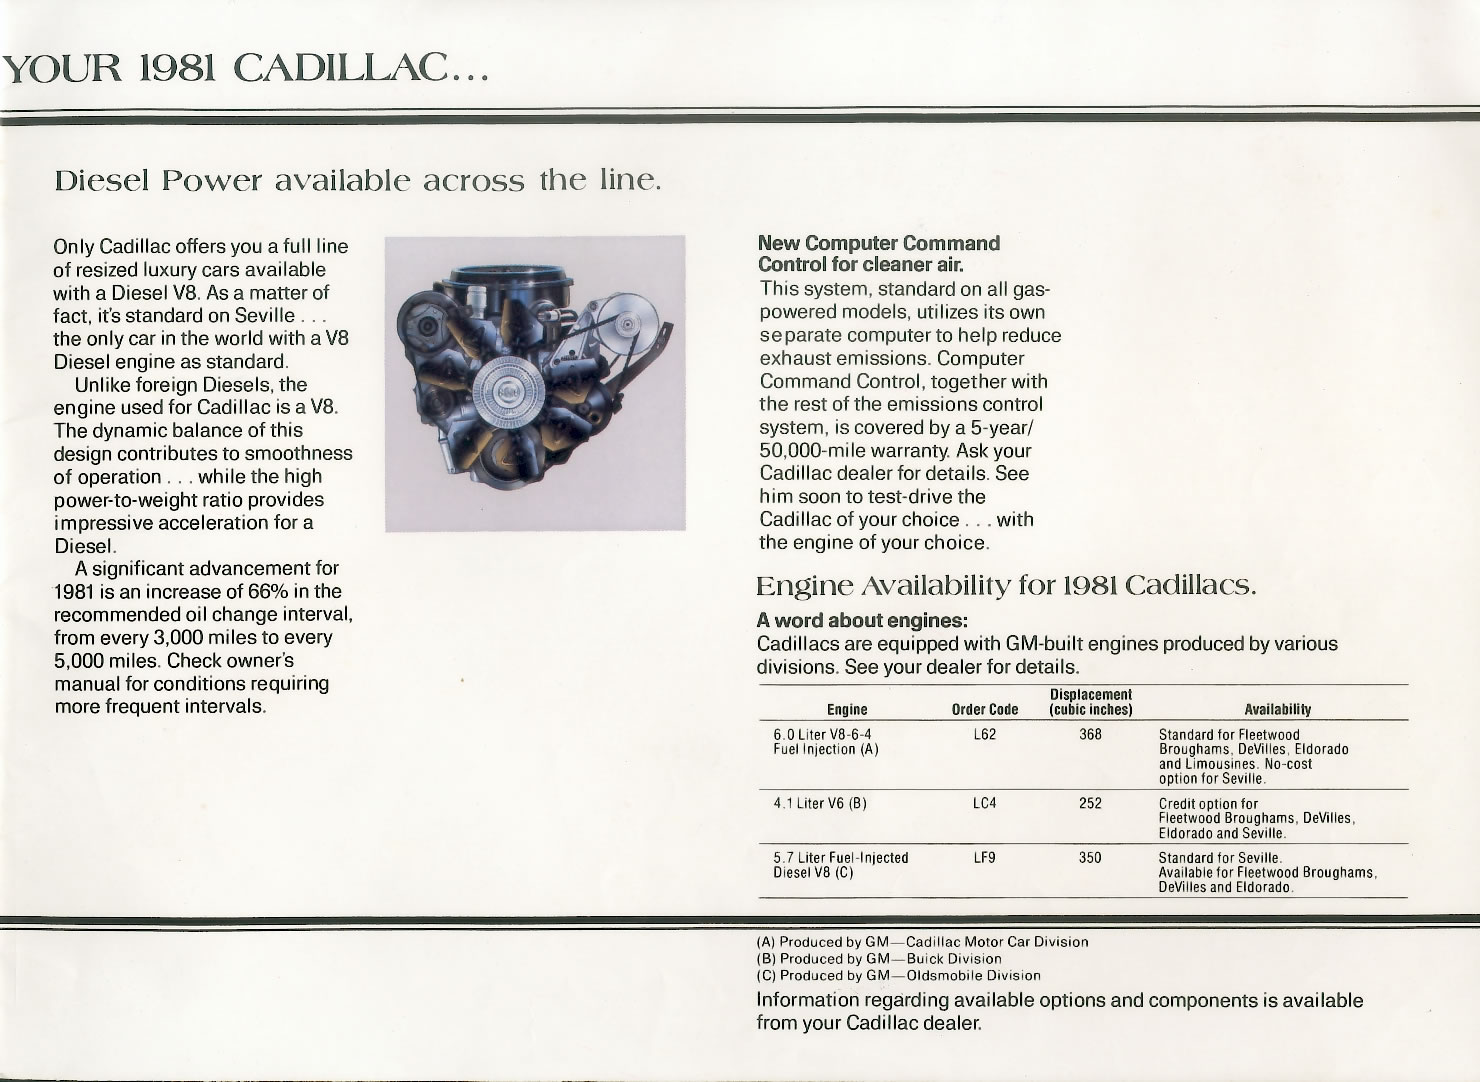 1981 Cadillac Brochure Page 13